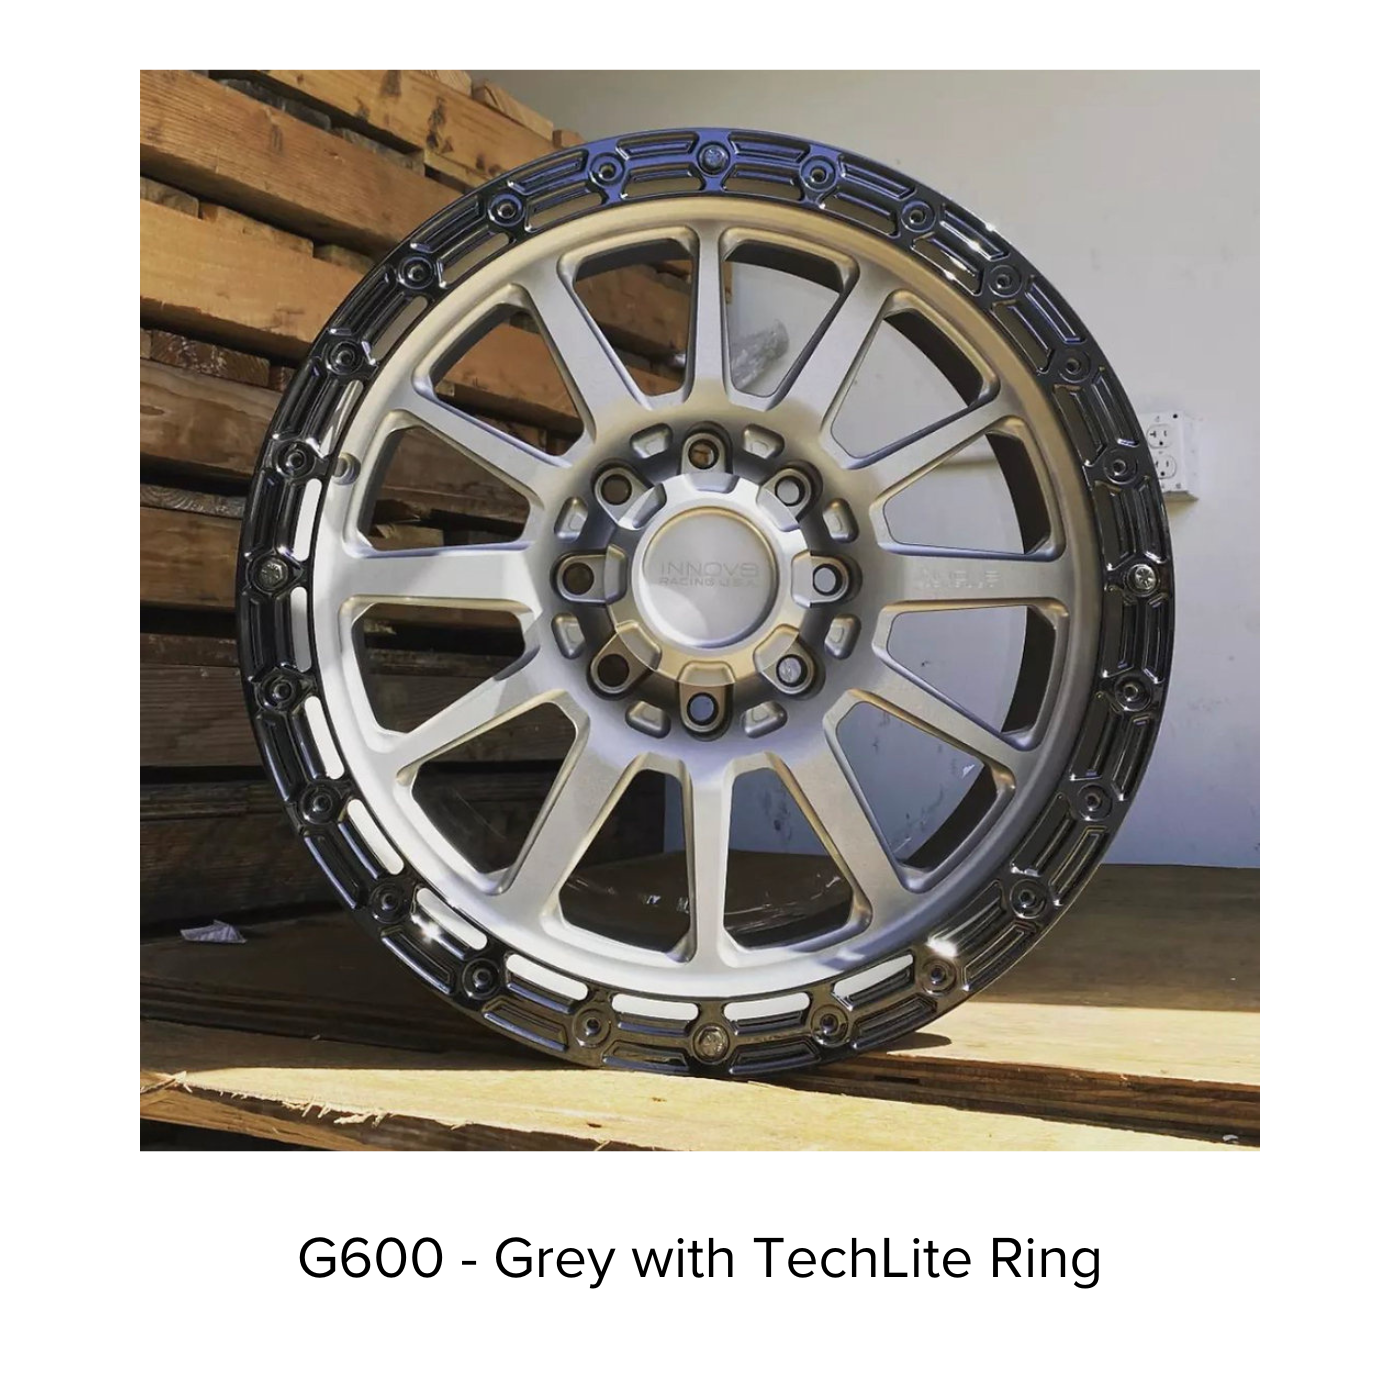 G600 Simulated Beadlock Wheel 20x9.0" 8 Lug - TechLite Ring display